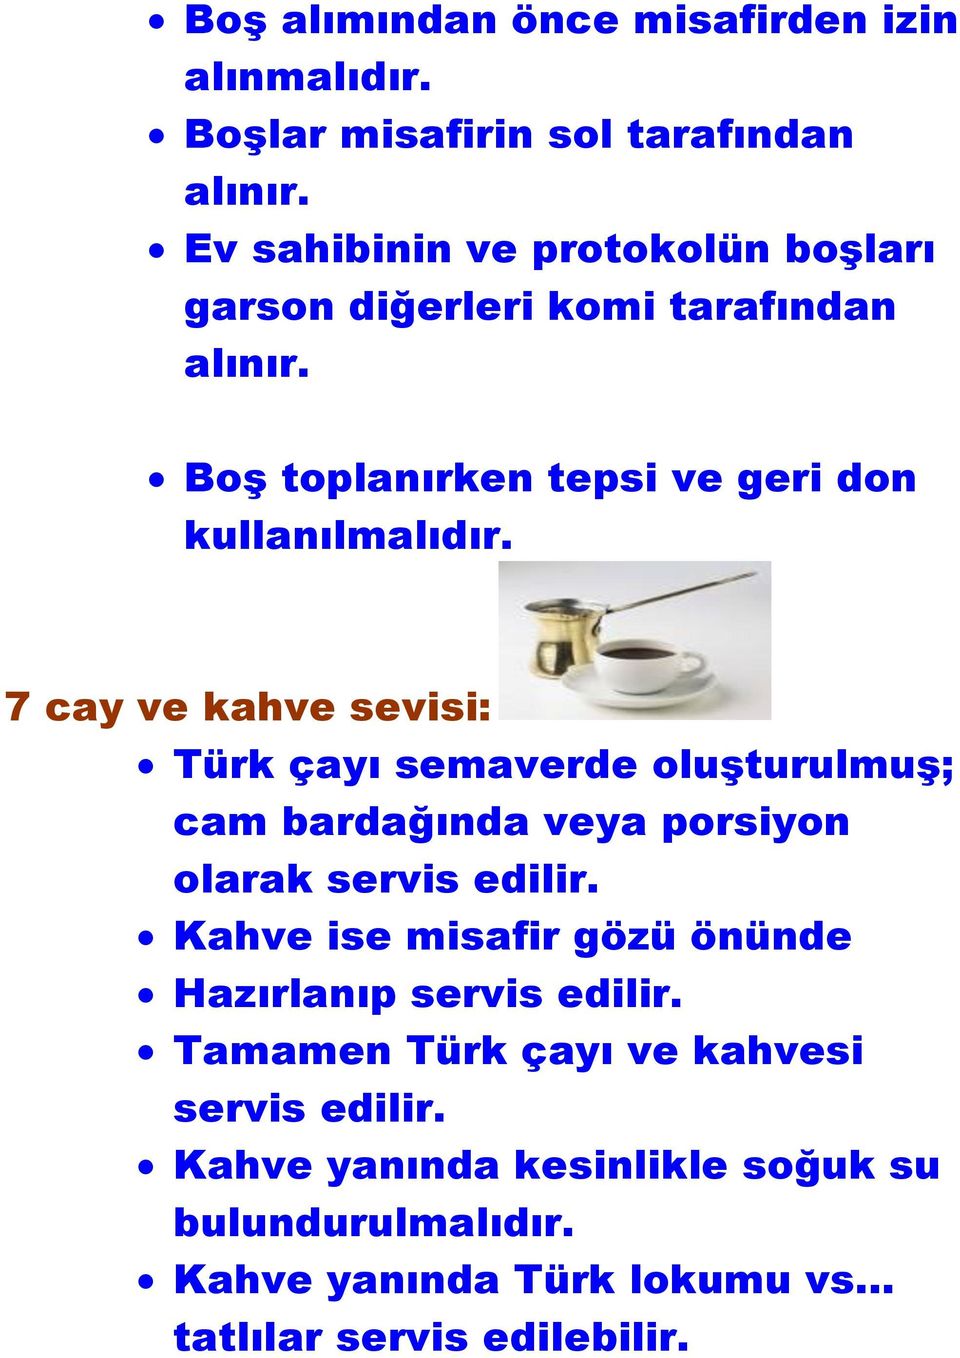 7 cay ve kahve sevisi: Türk çayı semaverde oluşturulmuş; cam bardağında veya porsiyon olarak servis edilir.